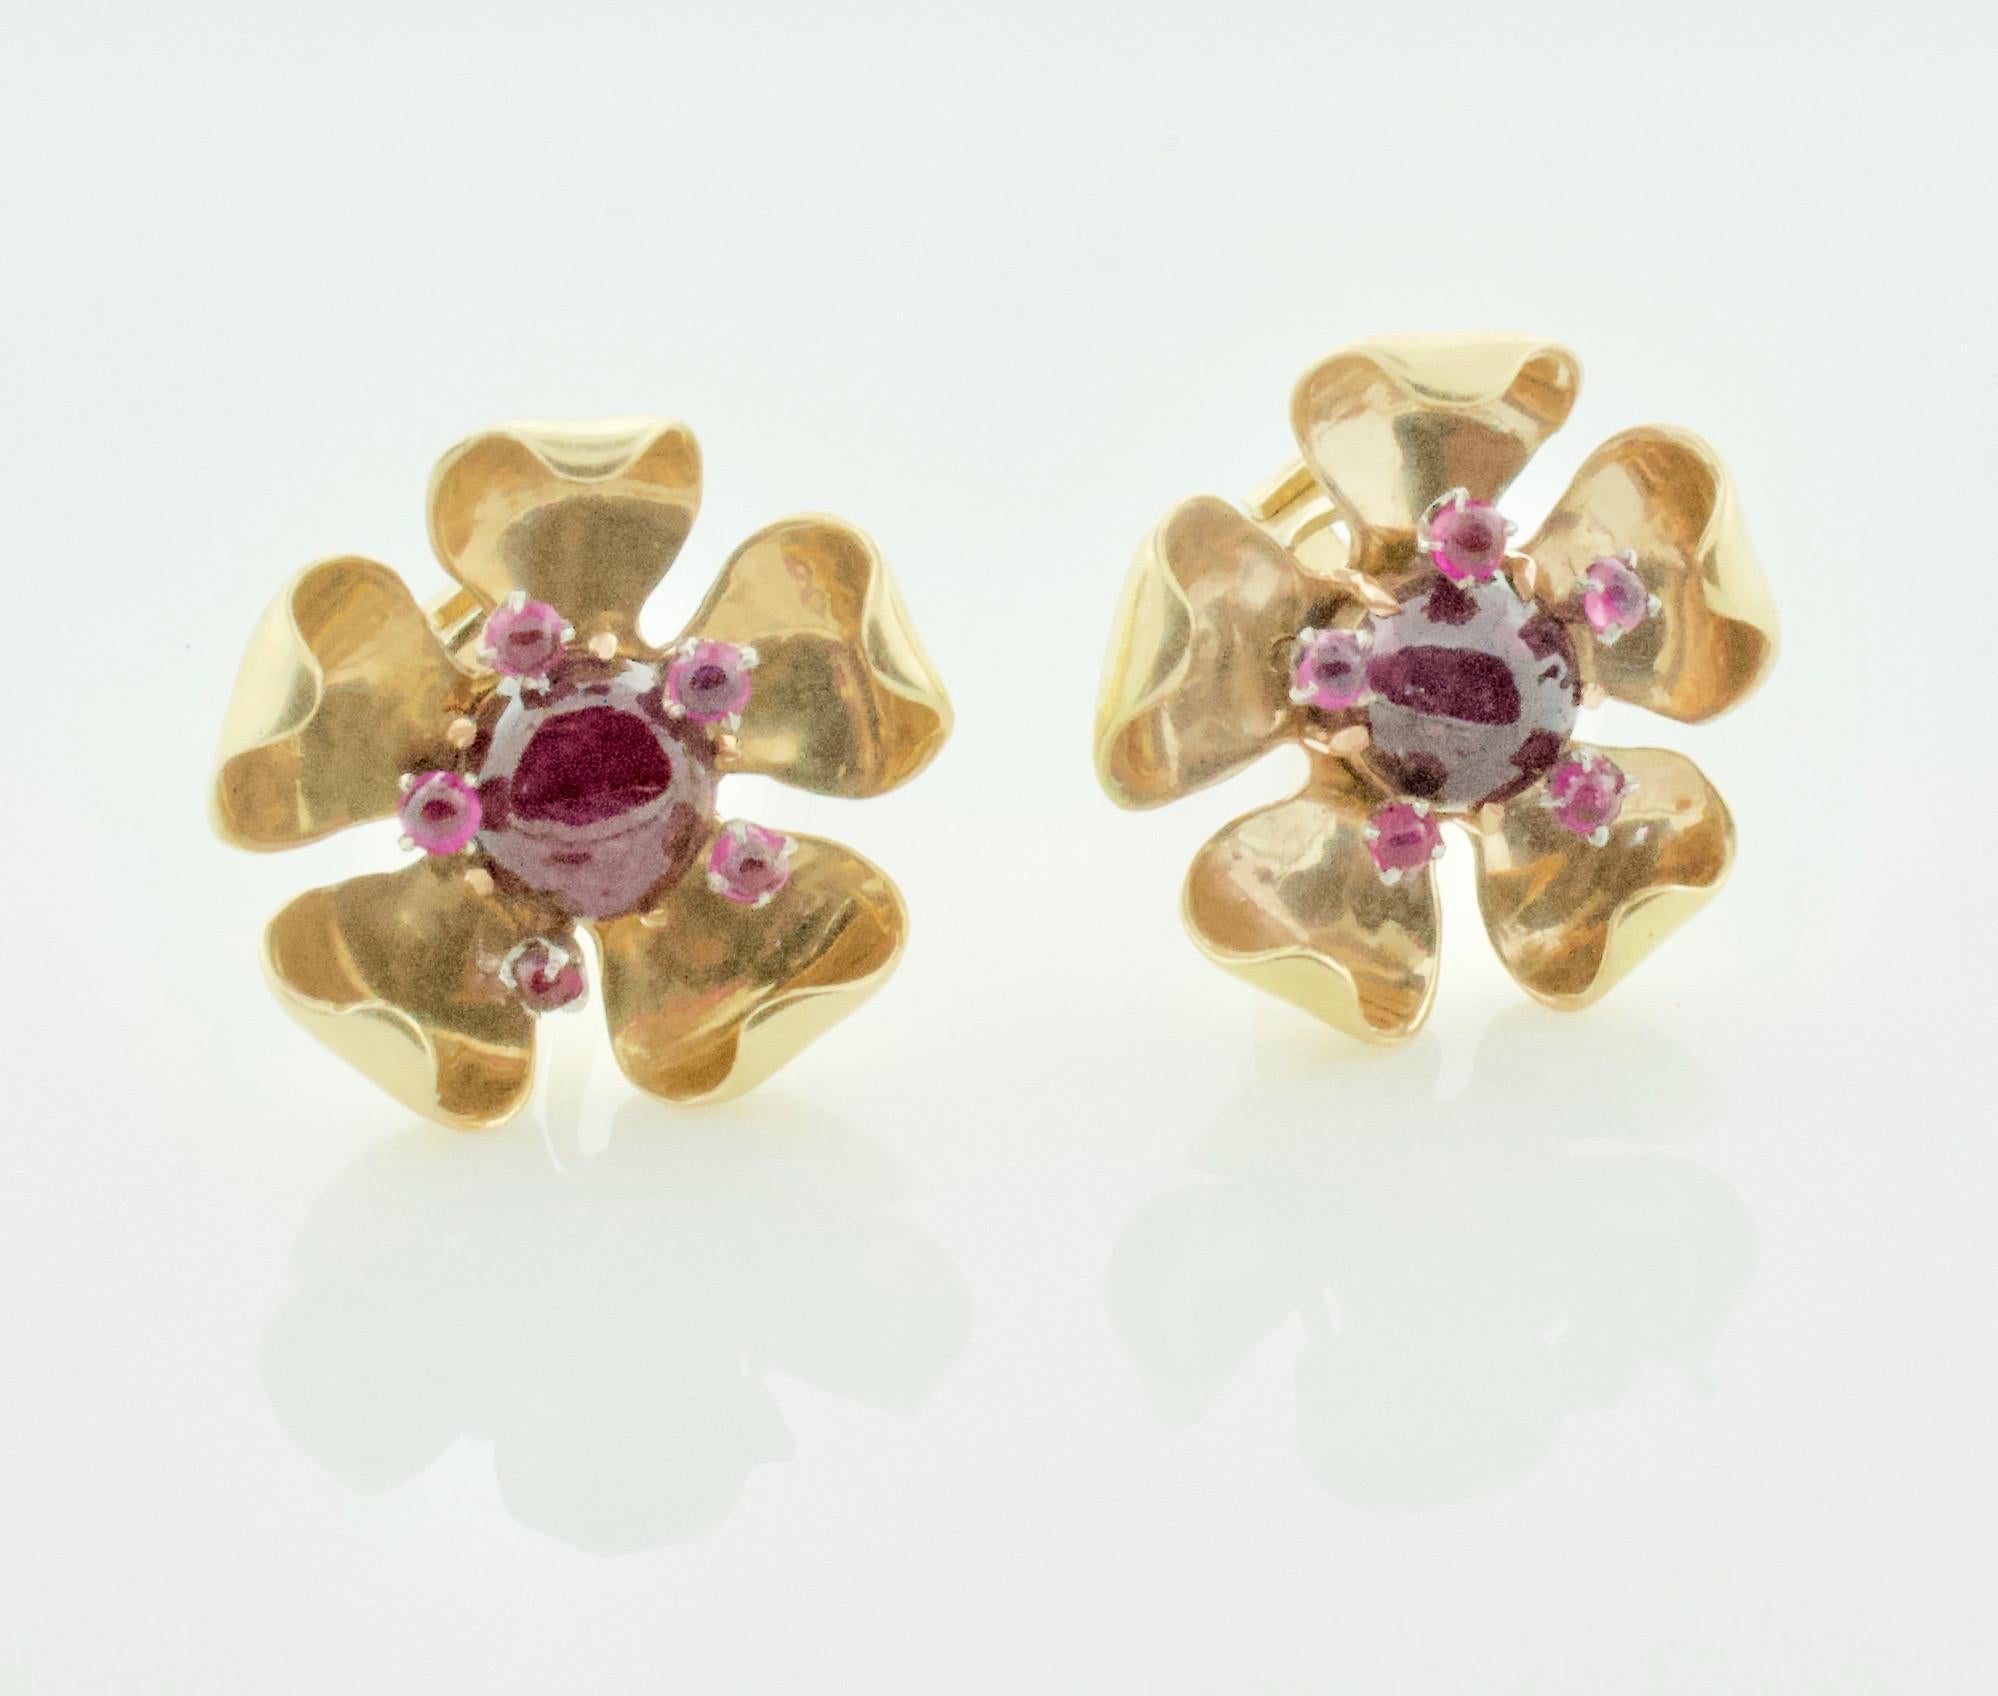 Circa 1940er Jahre Rubin und Diamant Blumen Ohrringe in Gelbgold.  
Elf Cabochon-Rubine mit einem Gewicht von ca. 2,00 Karat
Sehr stilvoll und tragbar 
Anklipsen.  Beiträge können von uns oder einem qualifizierten Juwelier hinzugefügt werden